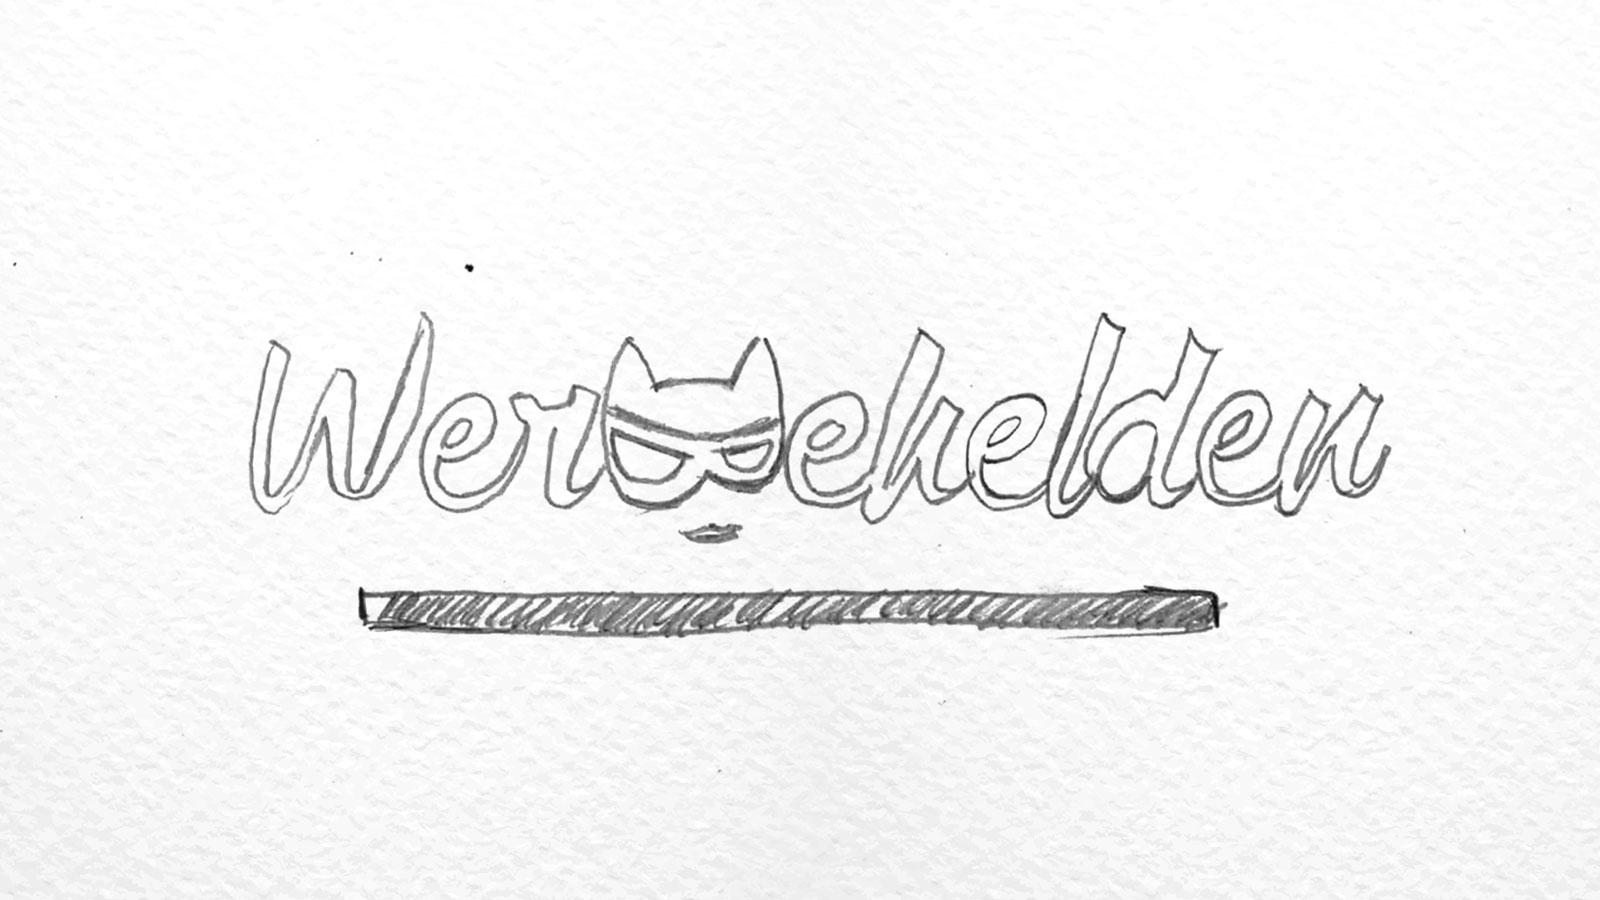 Werbehelden | werbehelden.com | 2019 (Logo Scribble 02) © echonet communication